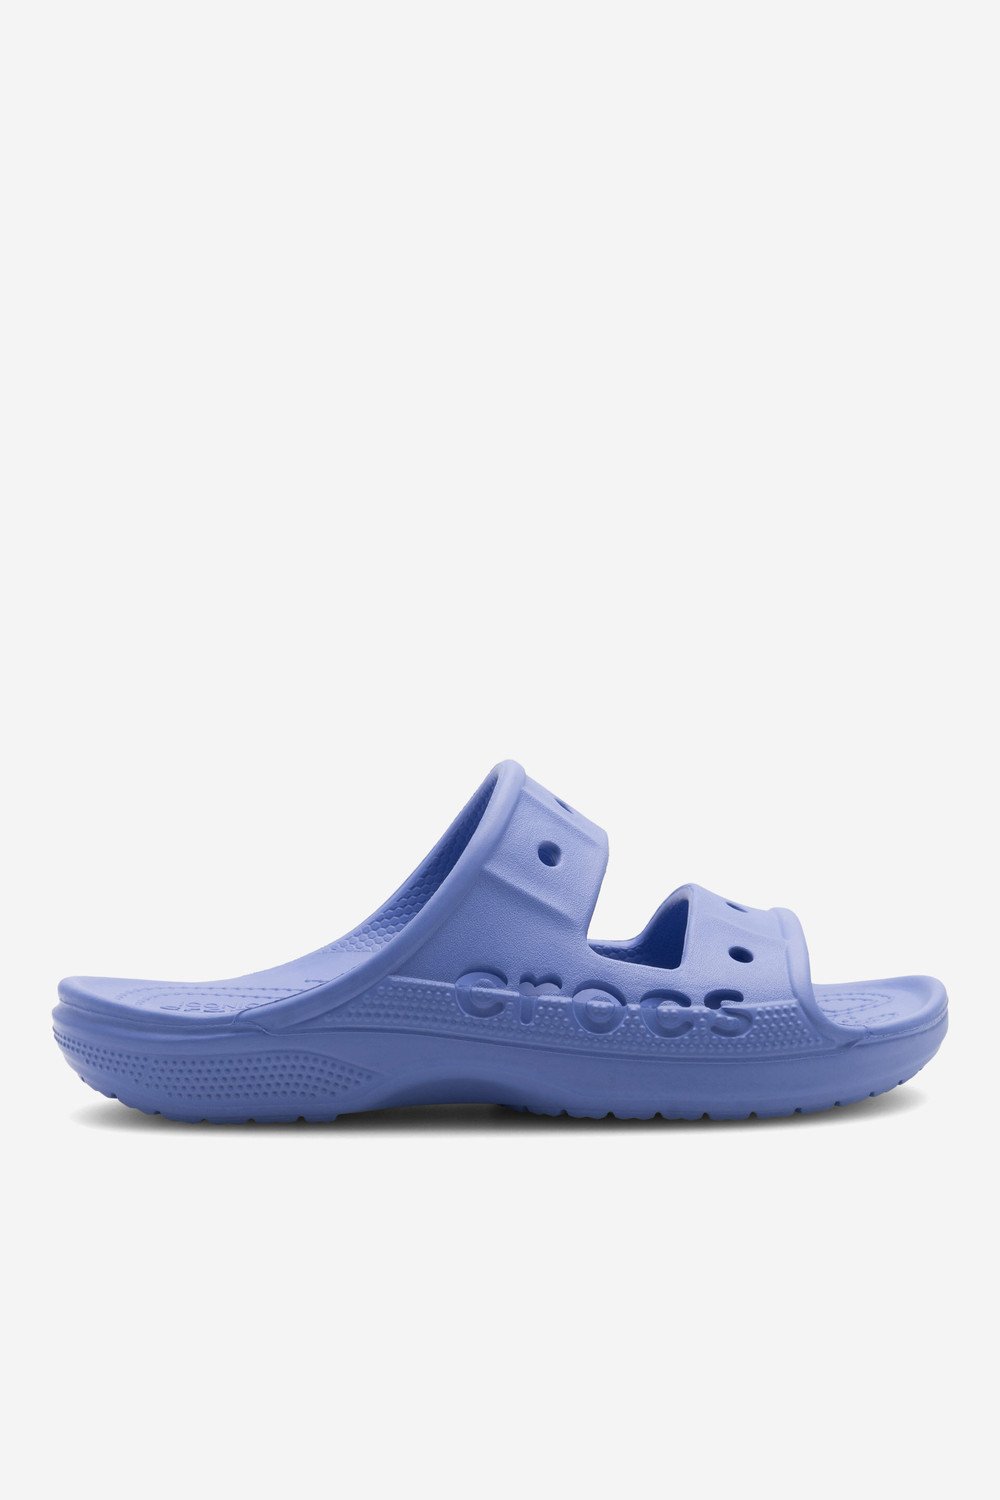 Bazénové pantofle Crocs BAYA SANDAL 207627-434